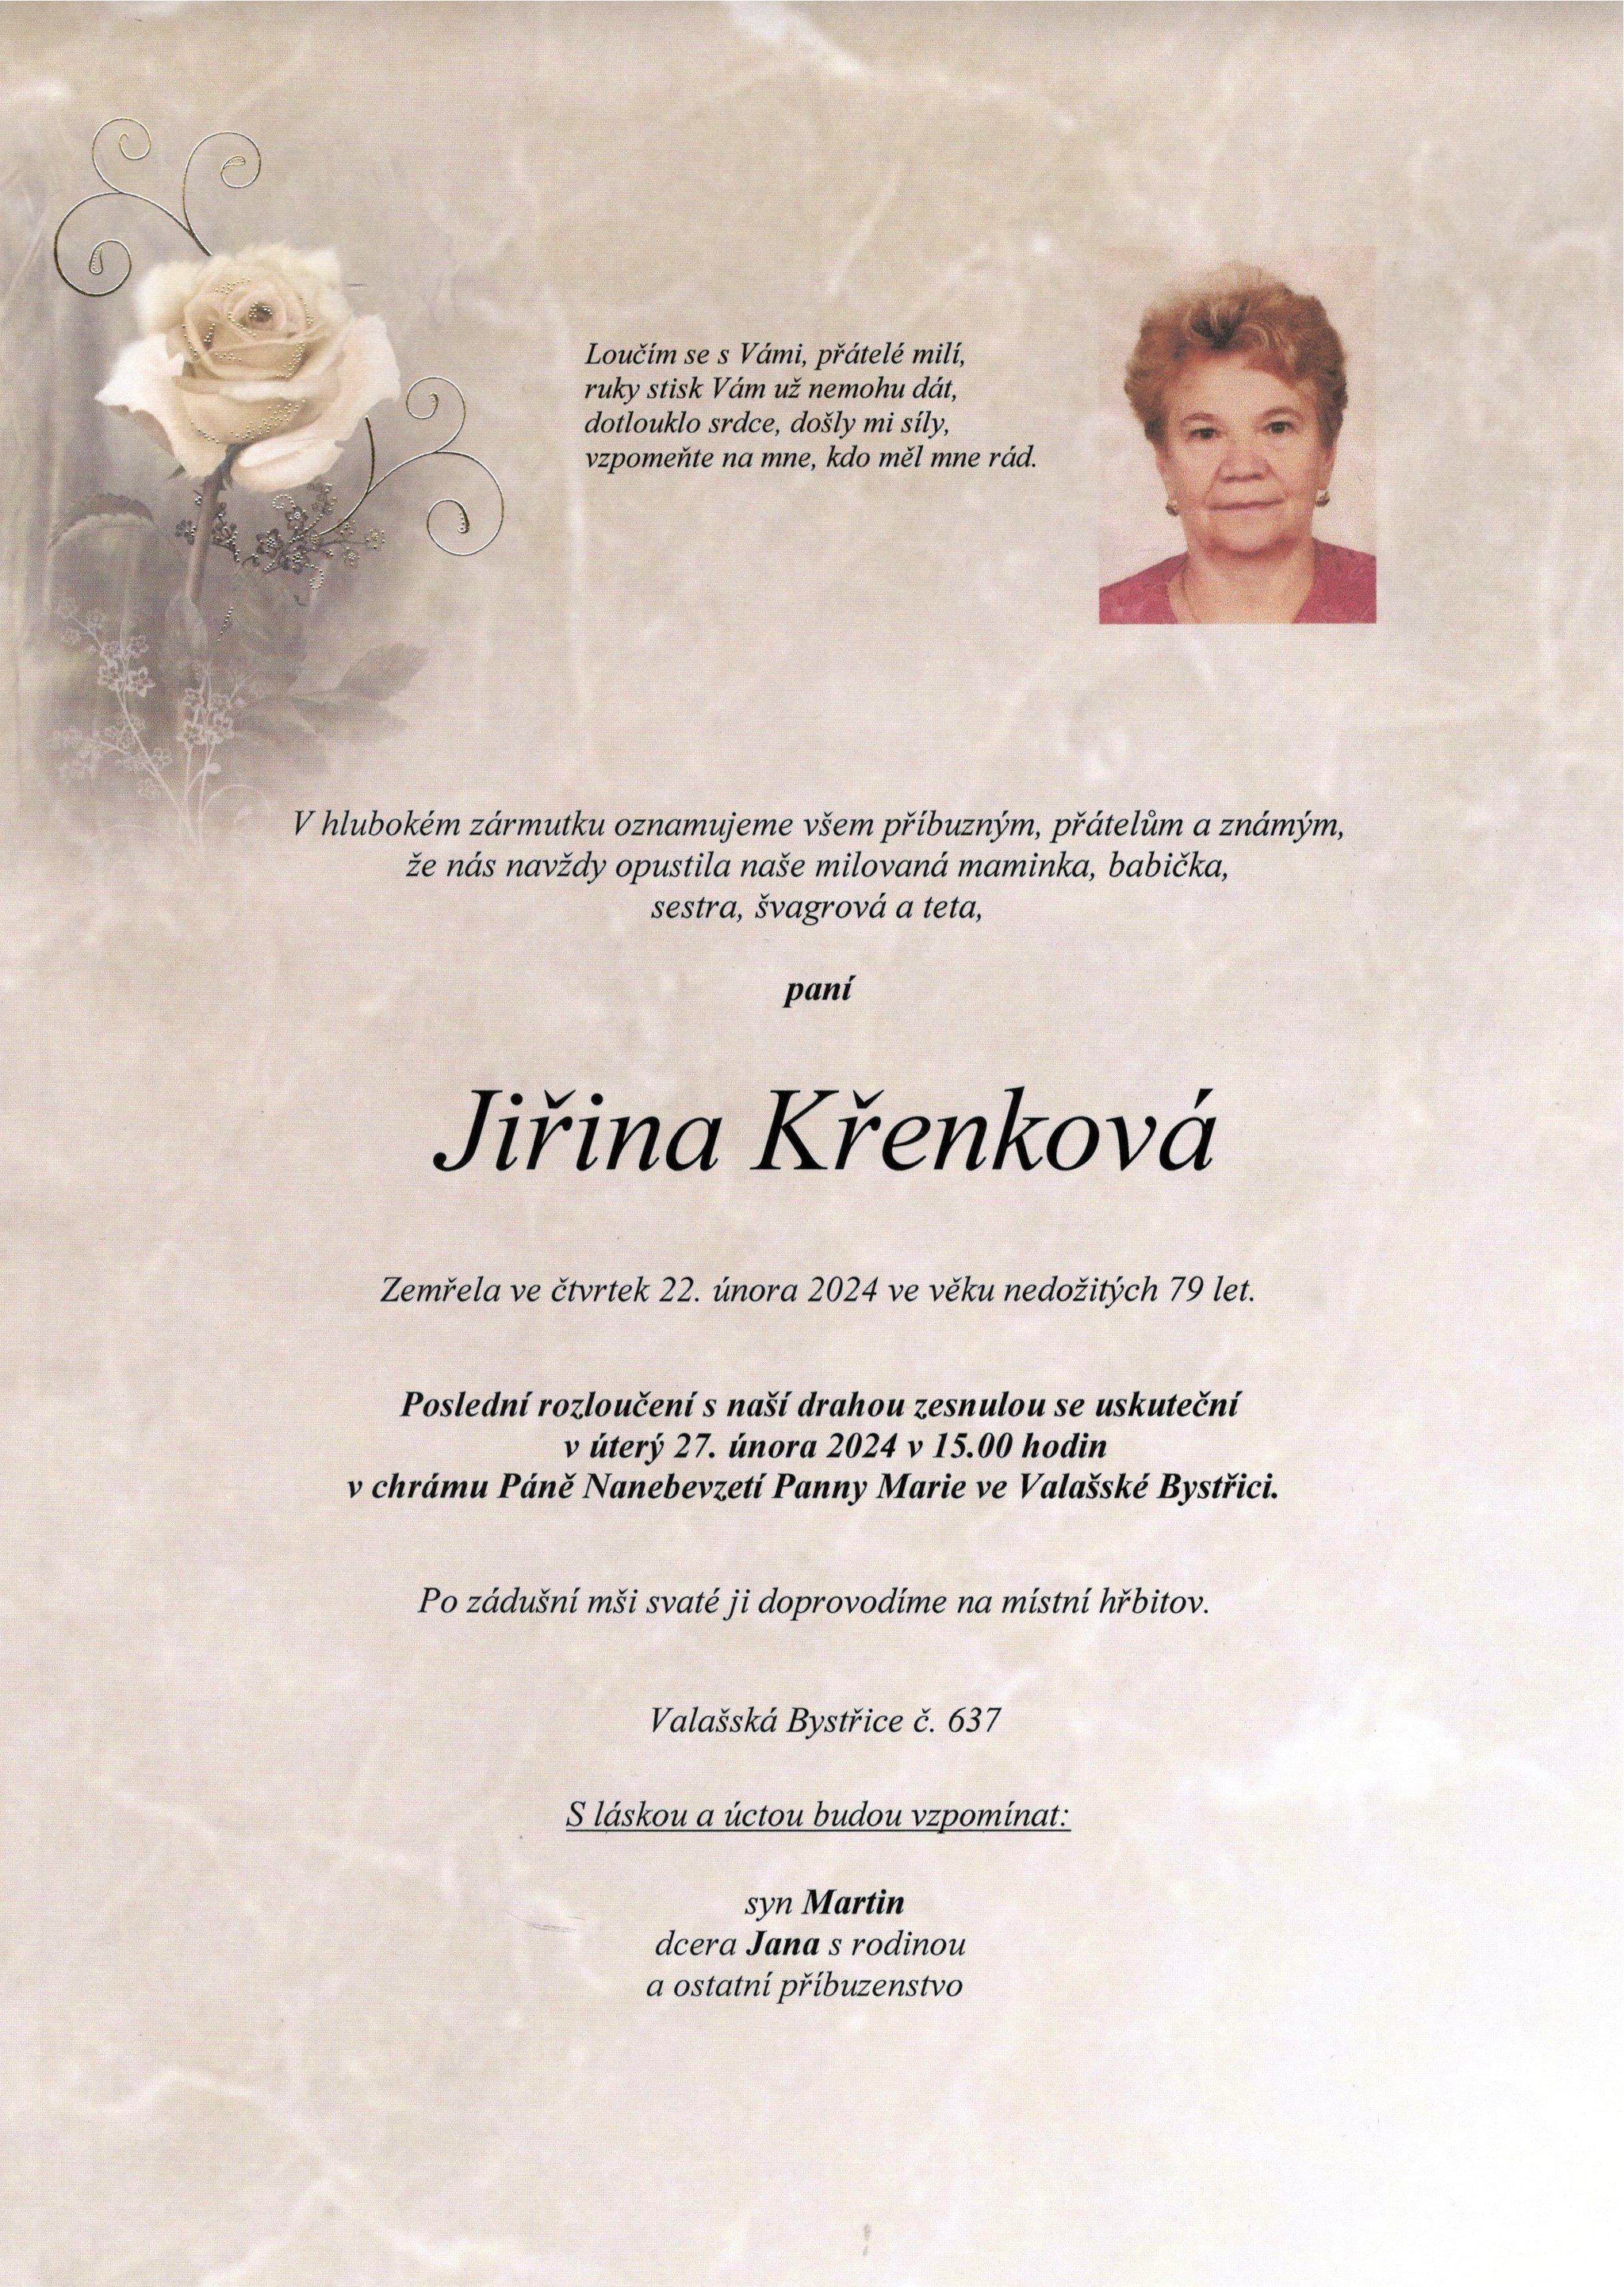 Jiřina Křenková